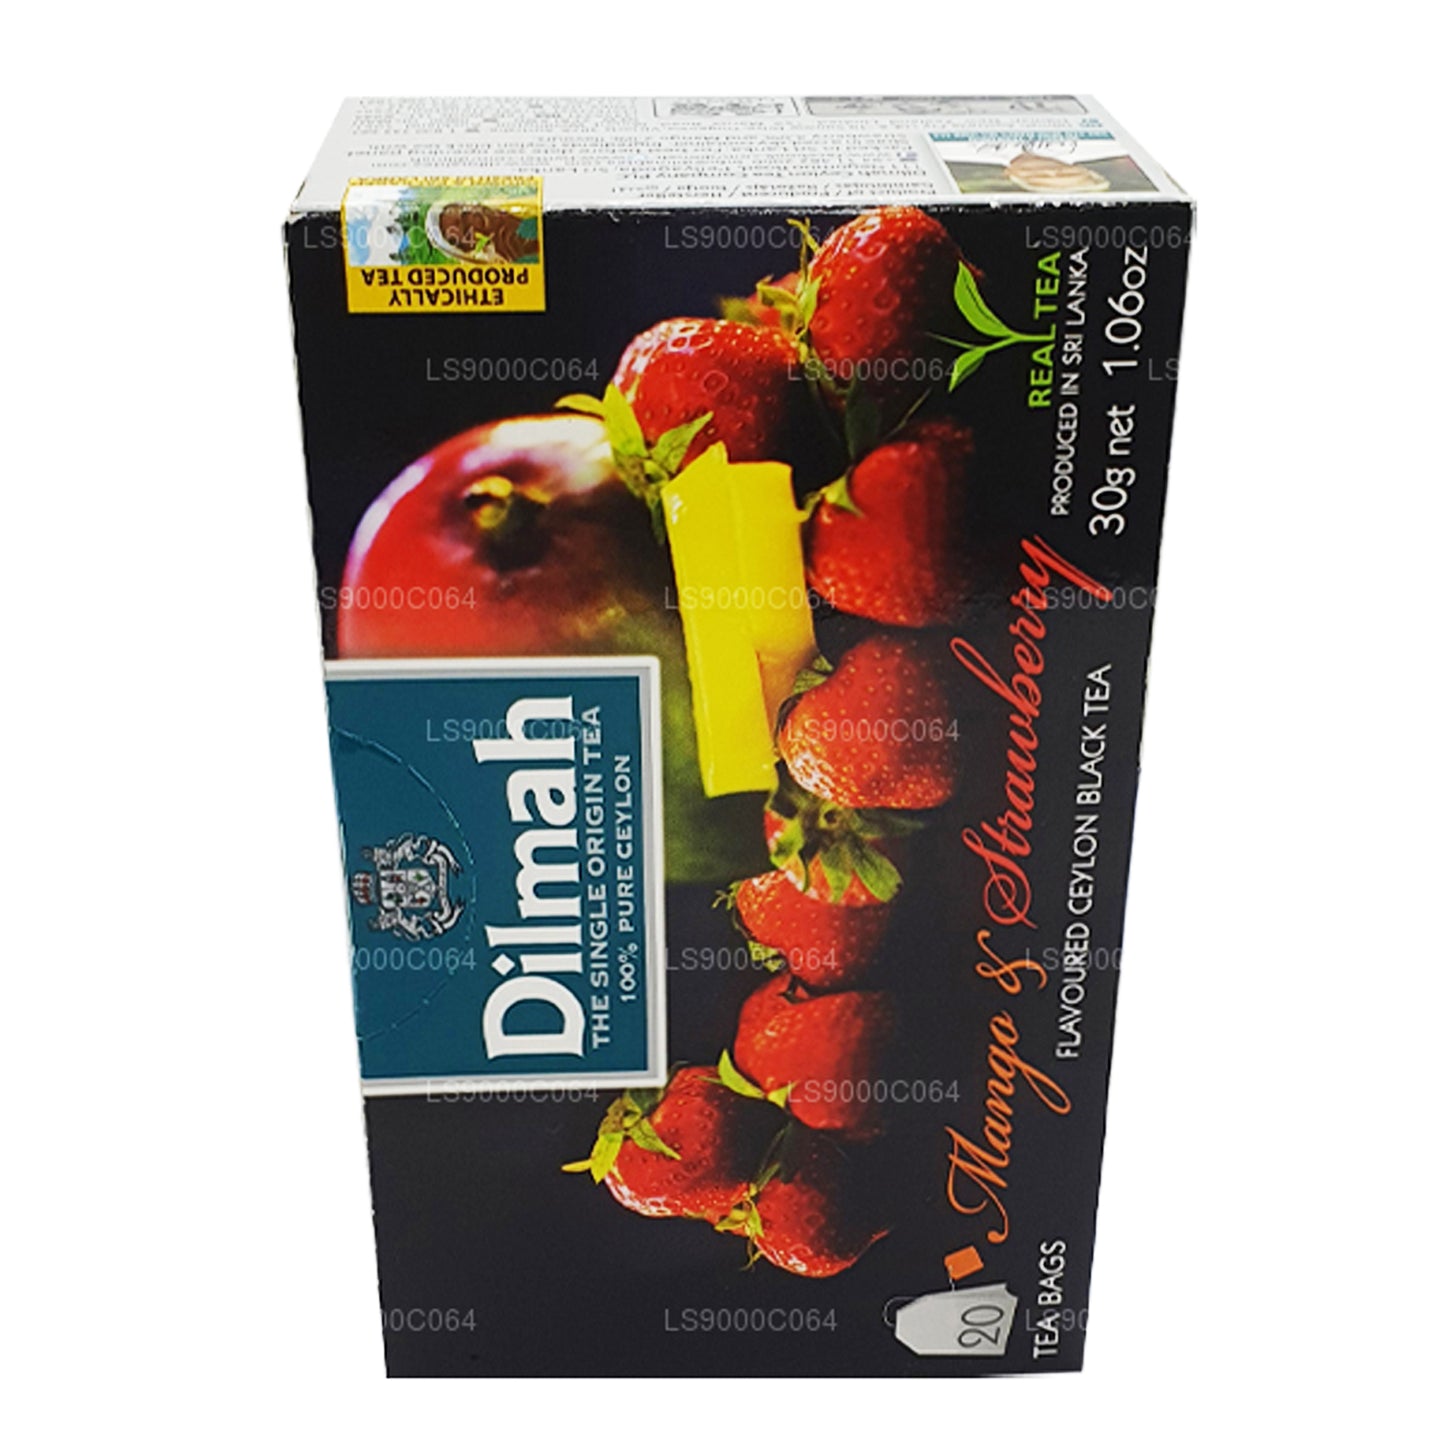 Чай Dilmah со вкусом манго и клубники (30 г) 20 пакетиков